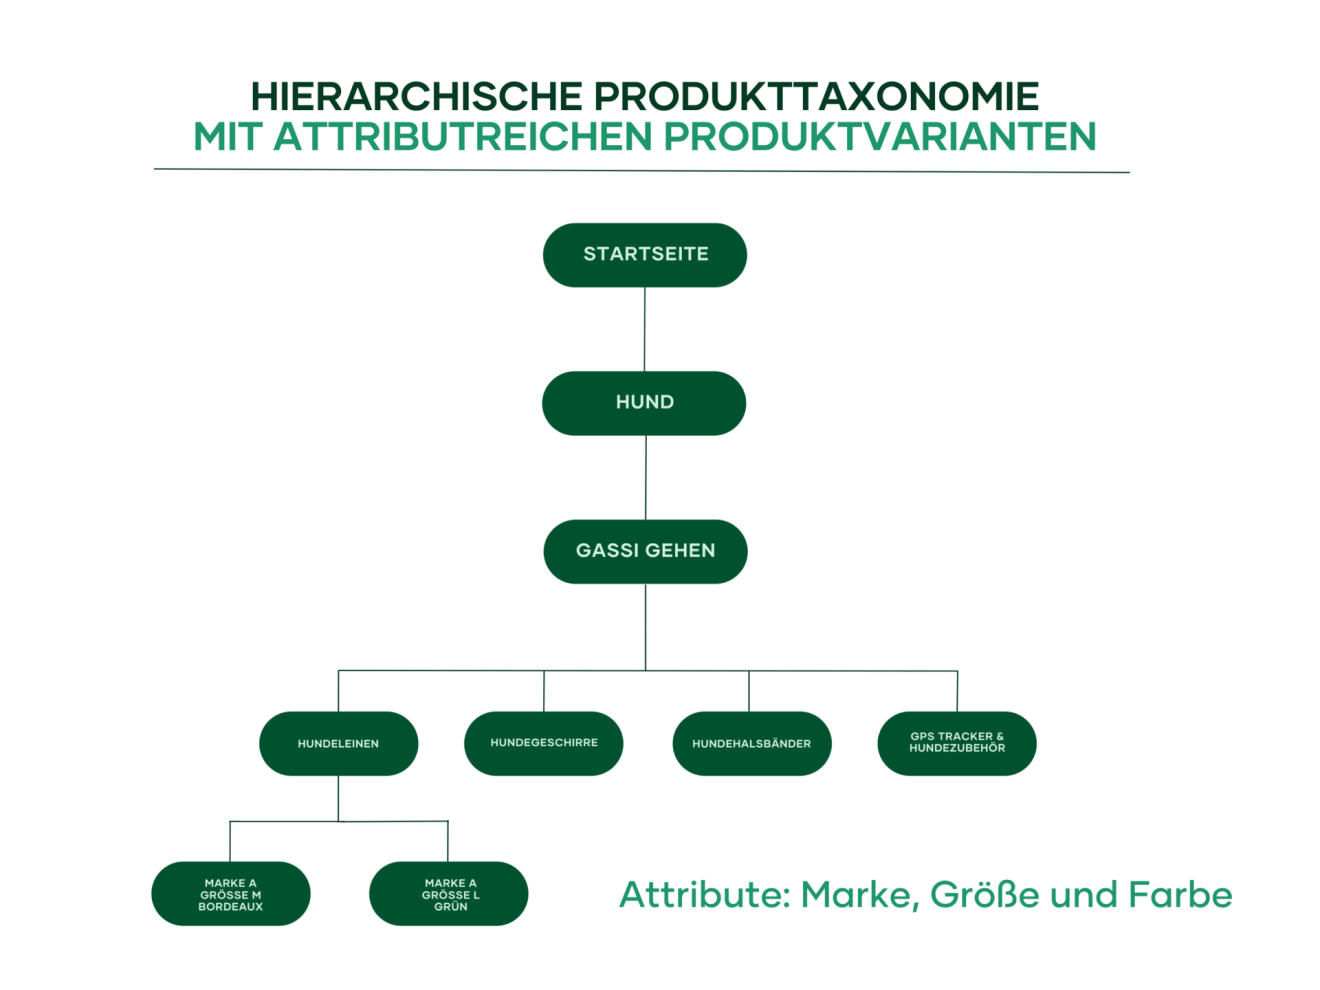 Eine hierarchische Produkttaxonomie eignet sich besonders bei attributreichen Produktvarianten. Davon profitiert auch „Fressnapf“.